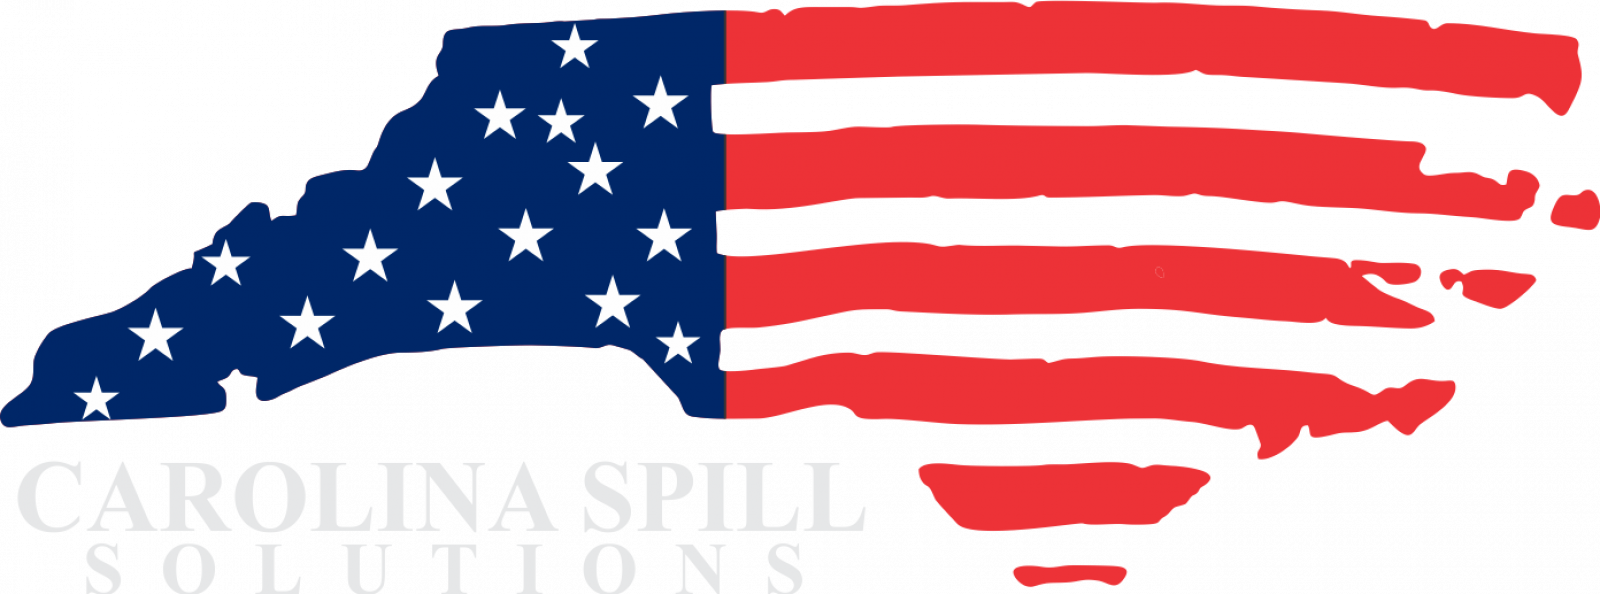 Carolina Spill Solutions 